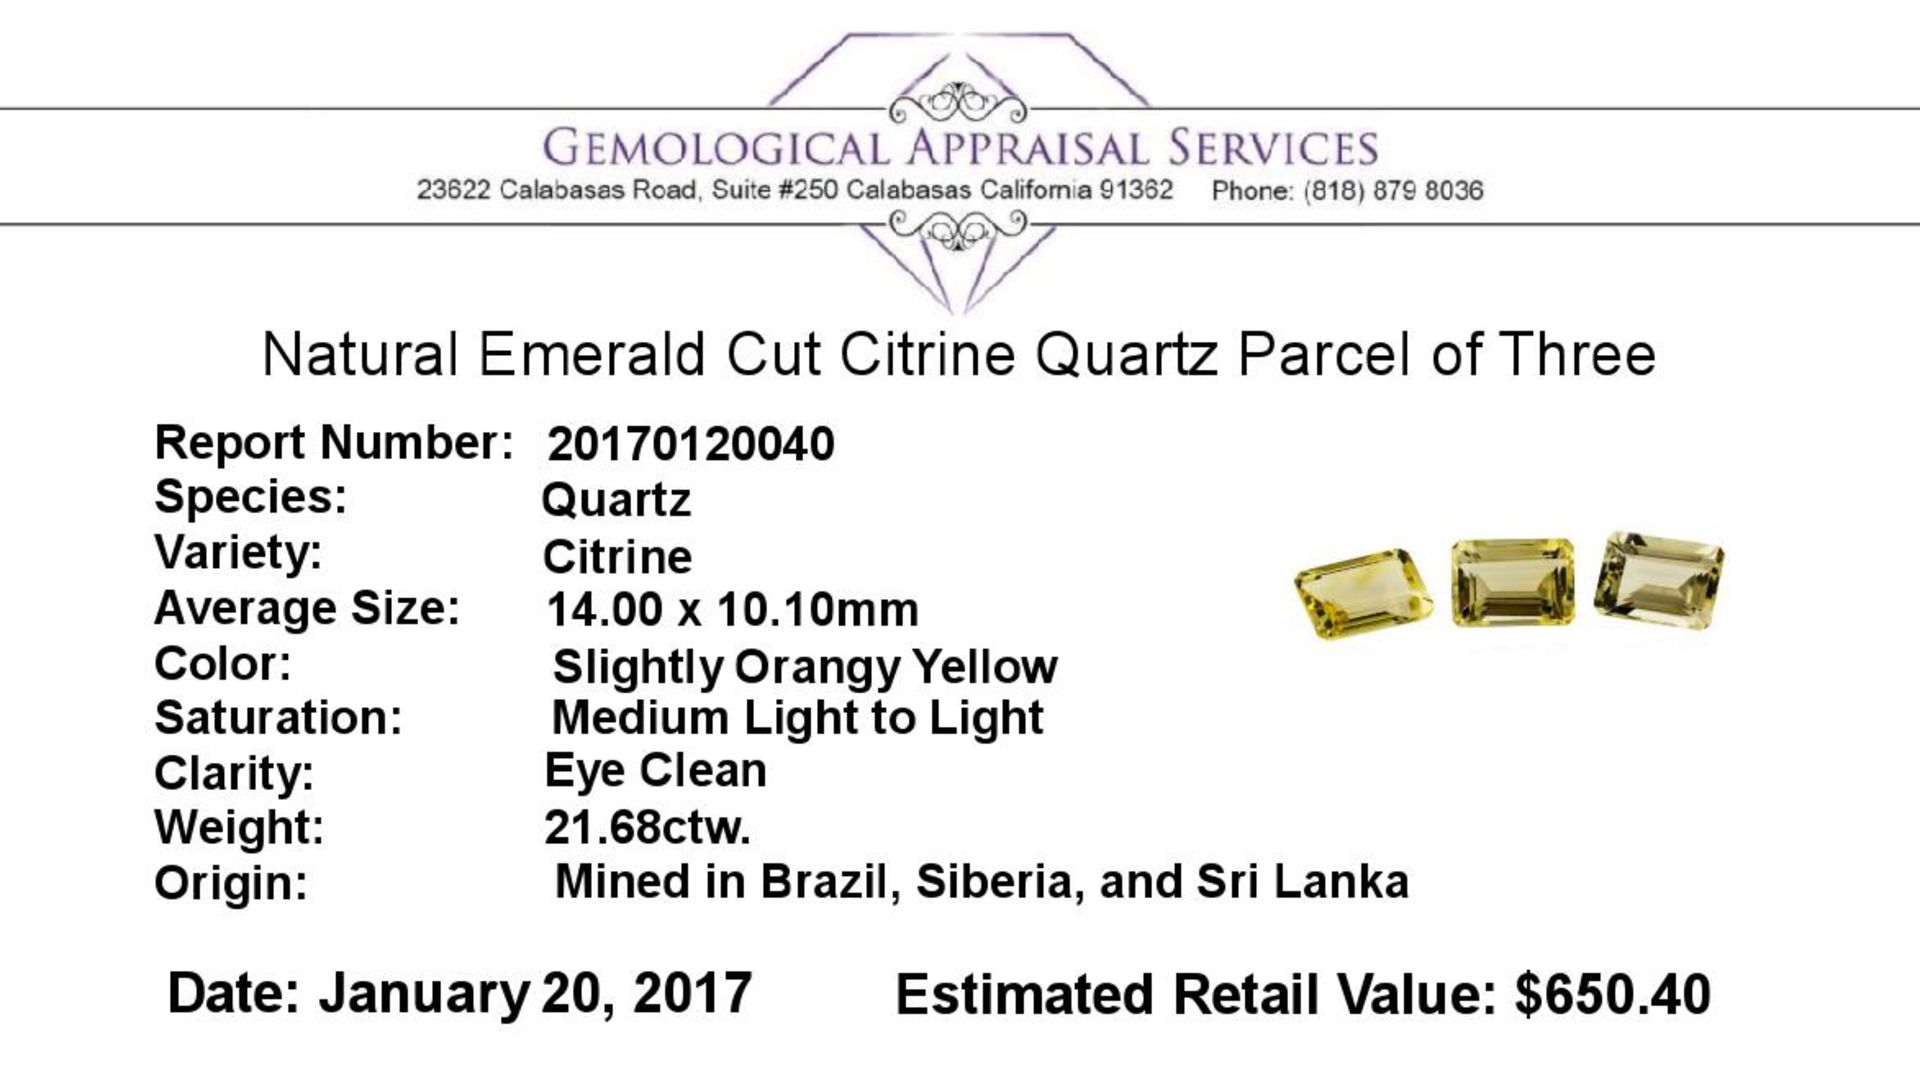 21.68 ctw.Natural Emerald Cut Citrine Quartz Parcel of Three - Image 3 of 3